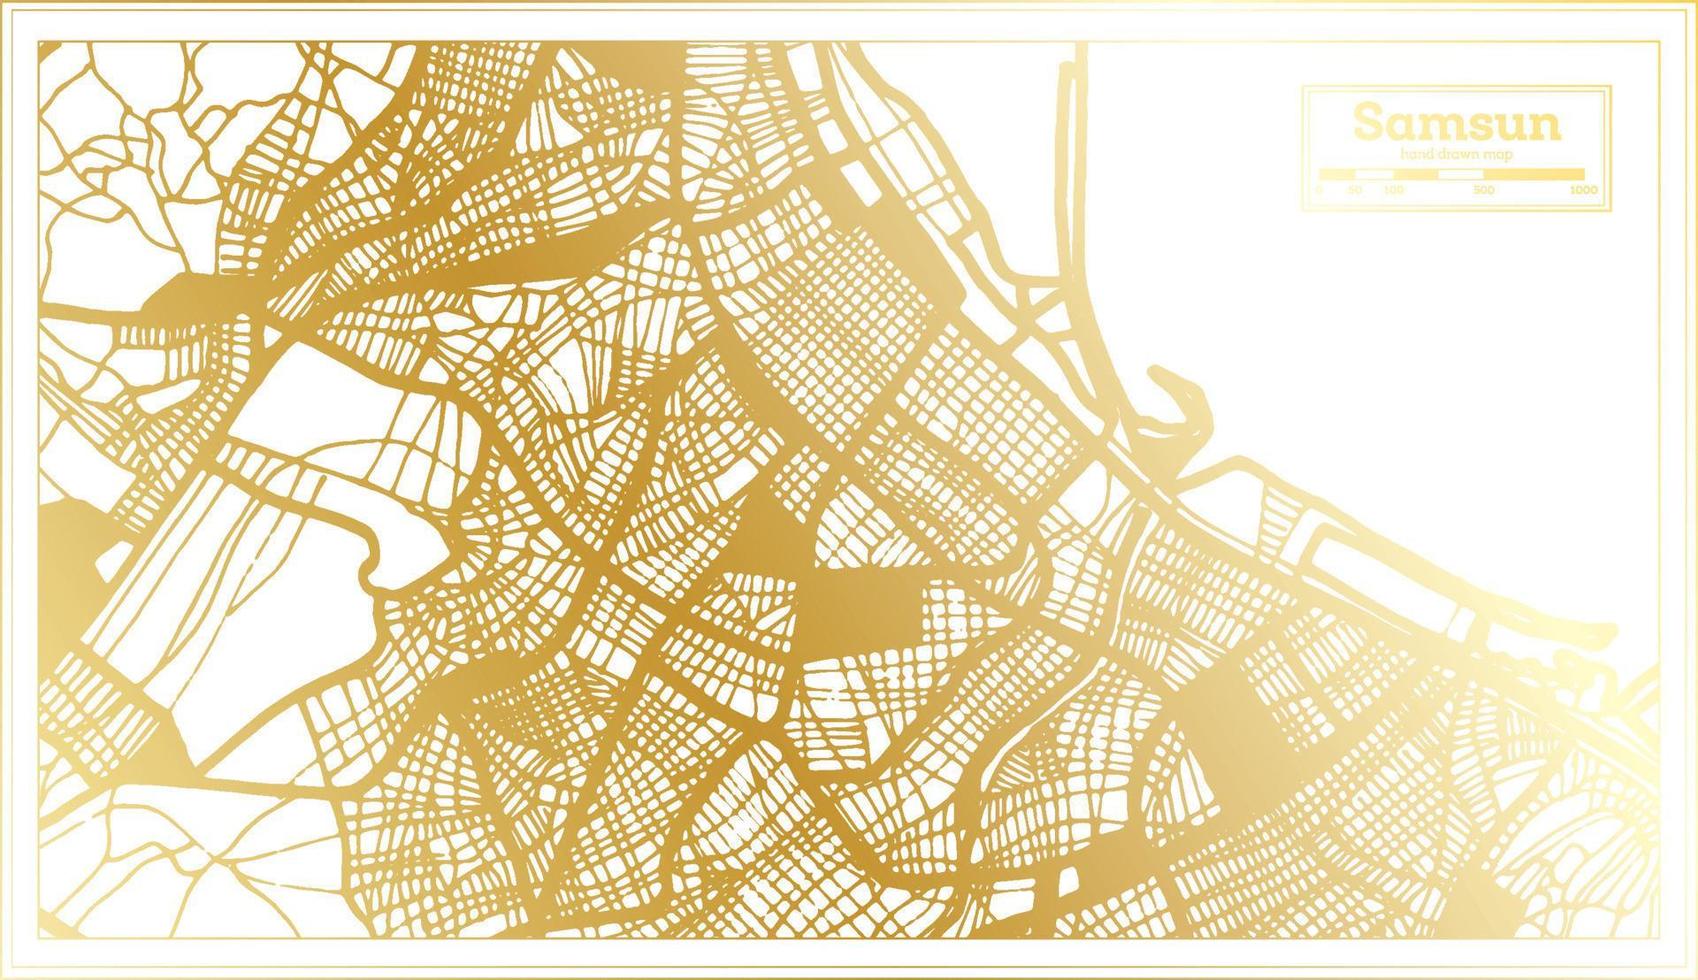 samsun kalkoen stad kaart in retro stijl in gouden kleur. schets kaart. vector